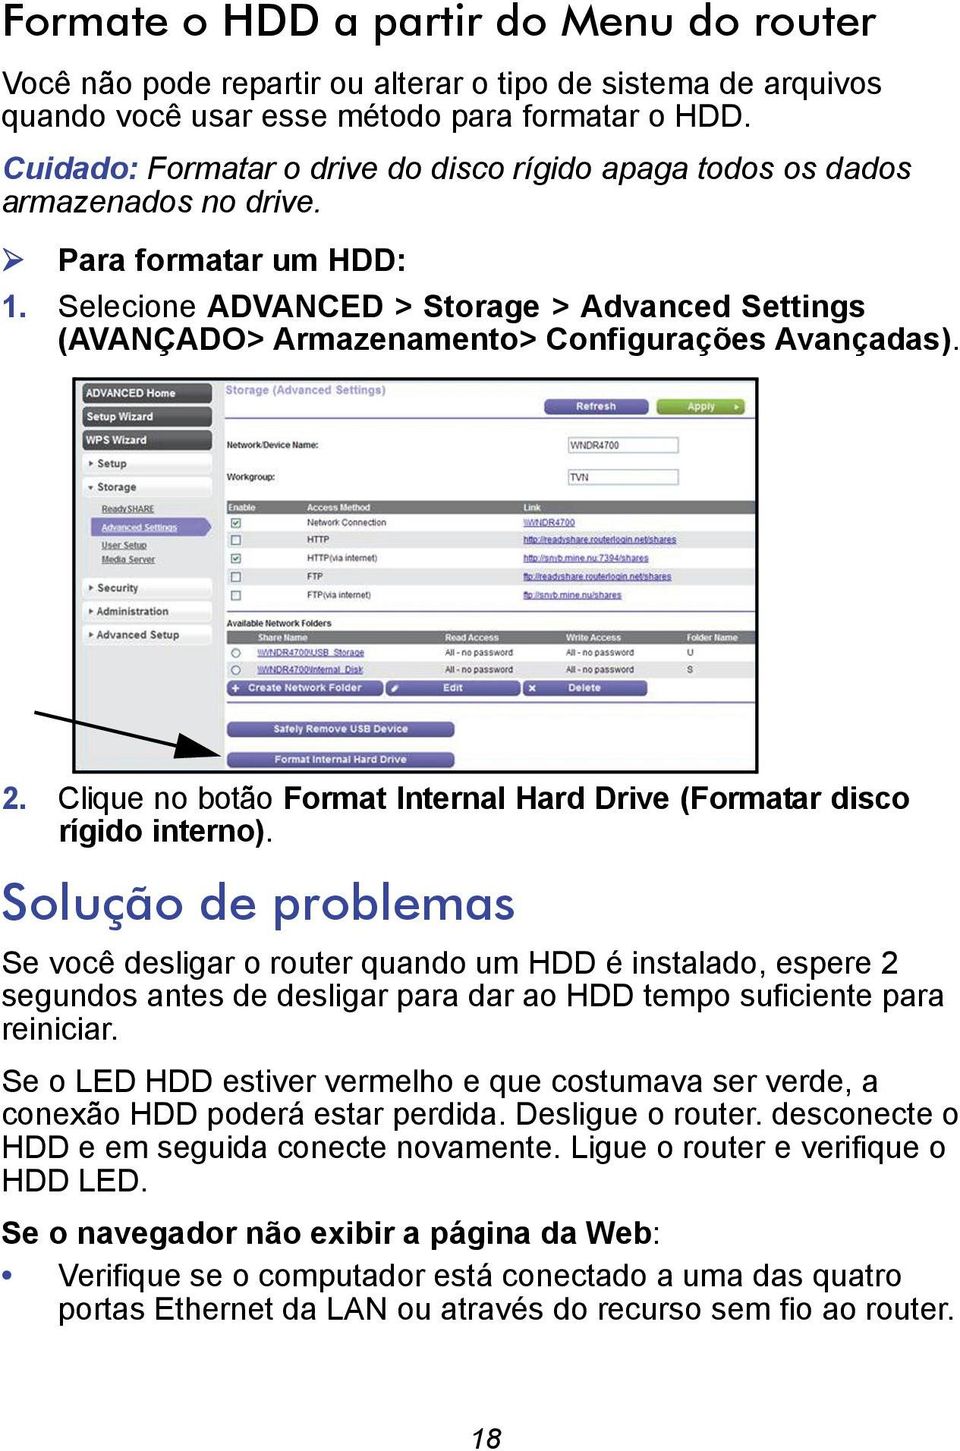 Selecione ADVANCED > Storage > Advanced Settings (AVANÇADO> Armazenamento> Configurações Avançadas). 2. Clique no botão Format Internal Hard Drive (Formatar disco rígido interno).